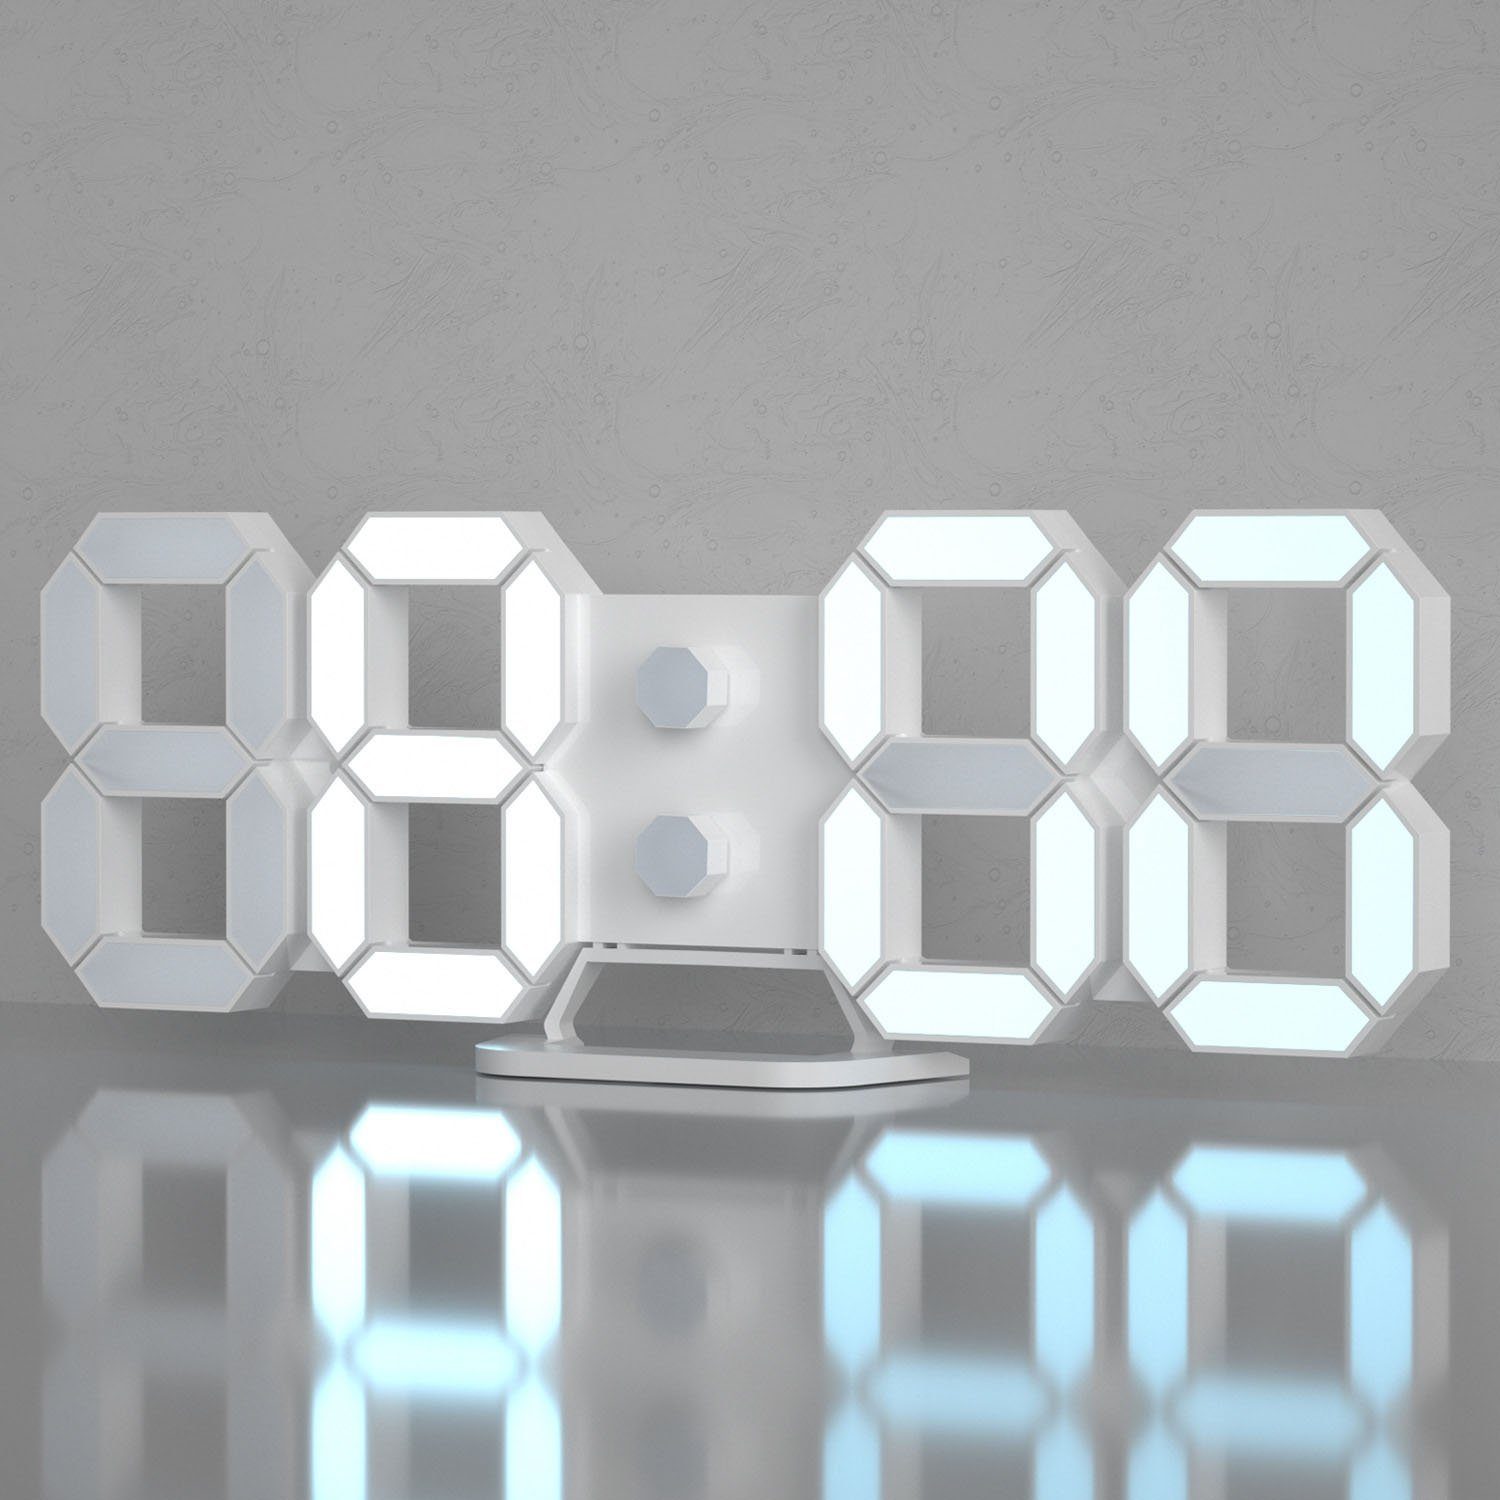 zggzerg Wanduhr 3D Wecker Uhr Led Wanduhr Digital dimmbar geräuschlos Snooze